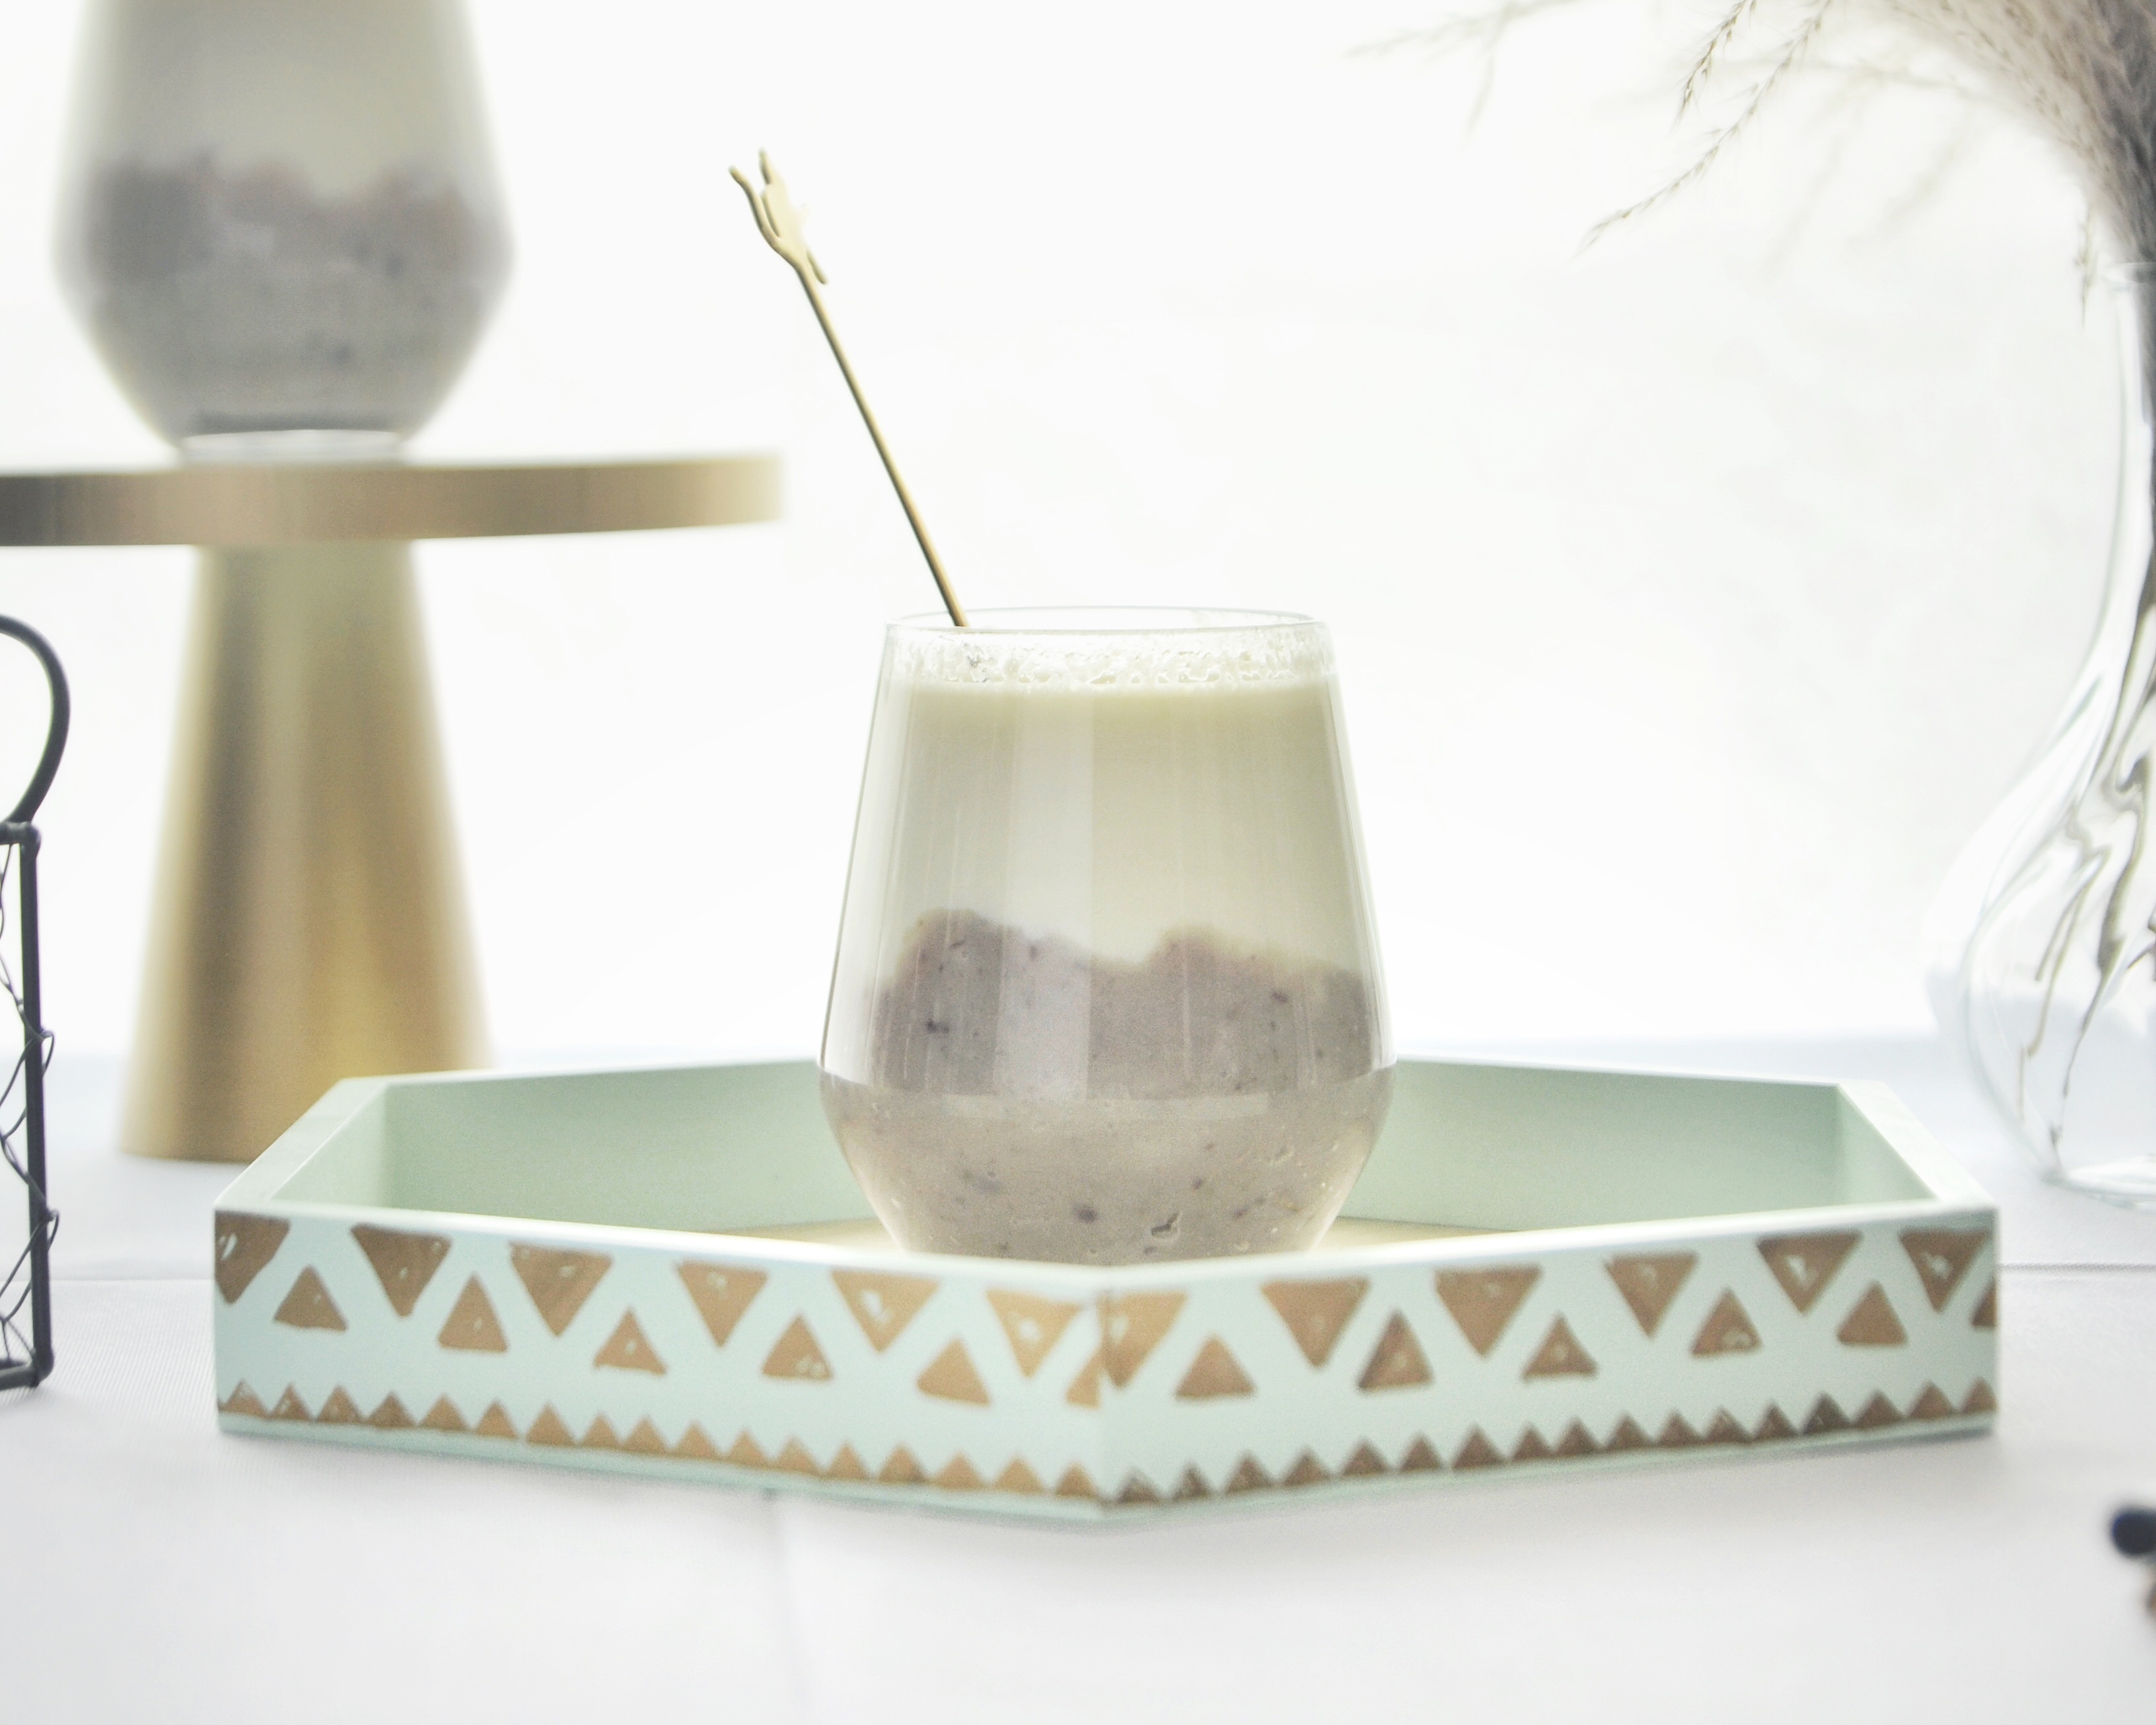 冬季热饮 — 紫薯山药鲜奶的做法